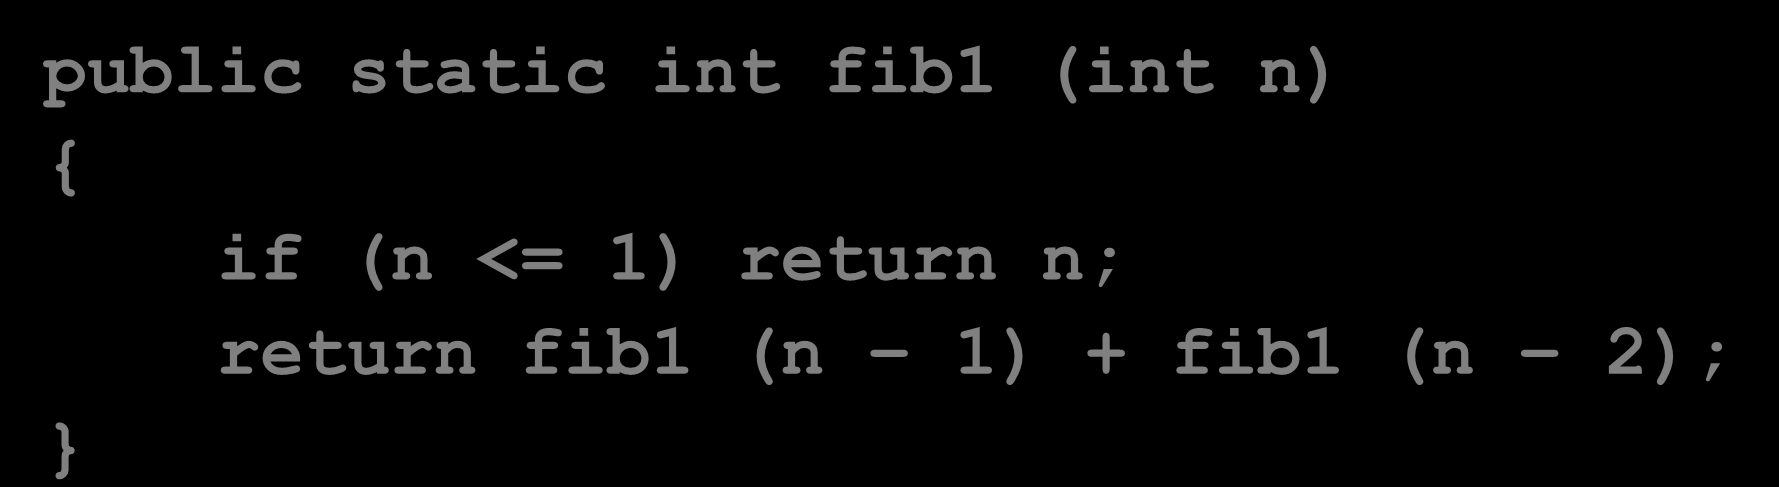 Bilangan Fibonacci F 0 = 0, F 1 = 1, F N = F N-1 + F N-2 1, 2, 3, 5, 8, 13, 21, 34, 55, 89,.